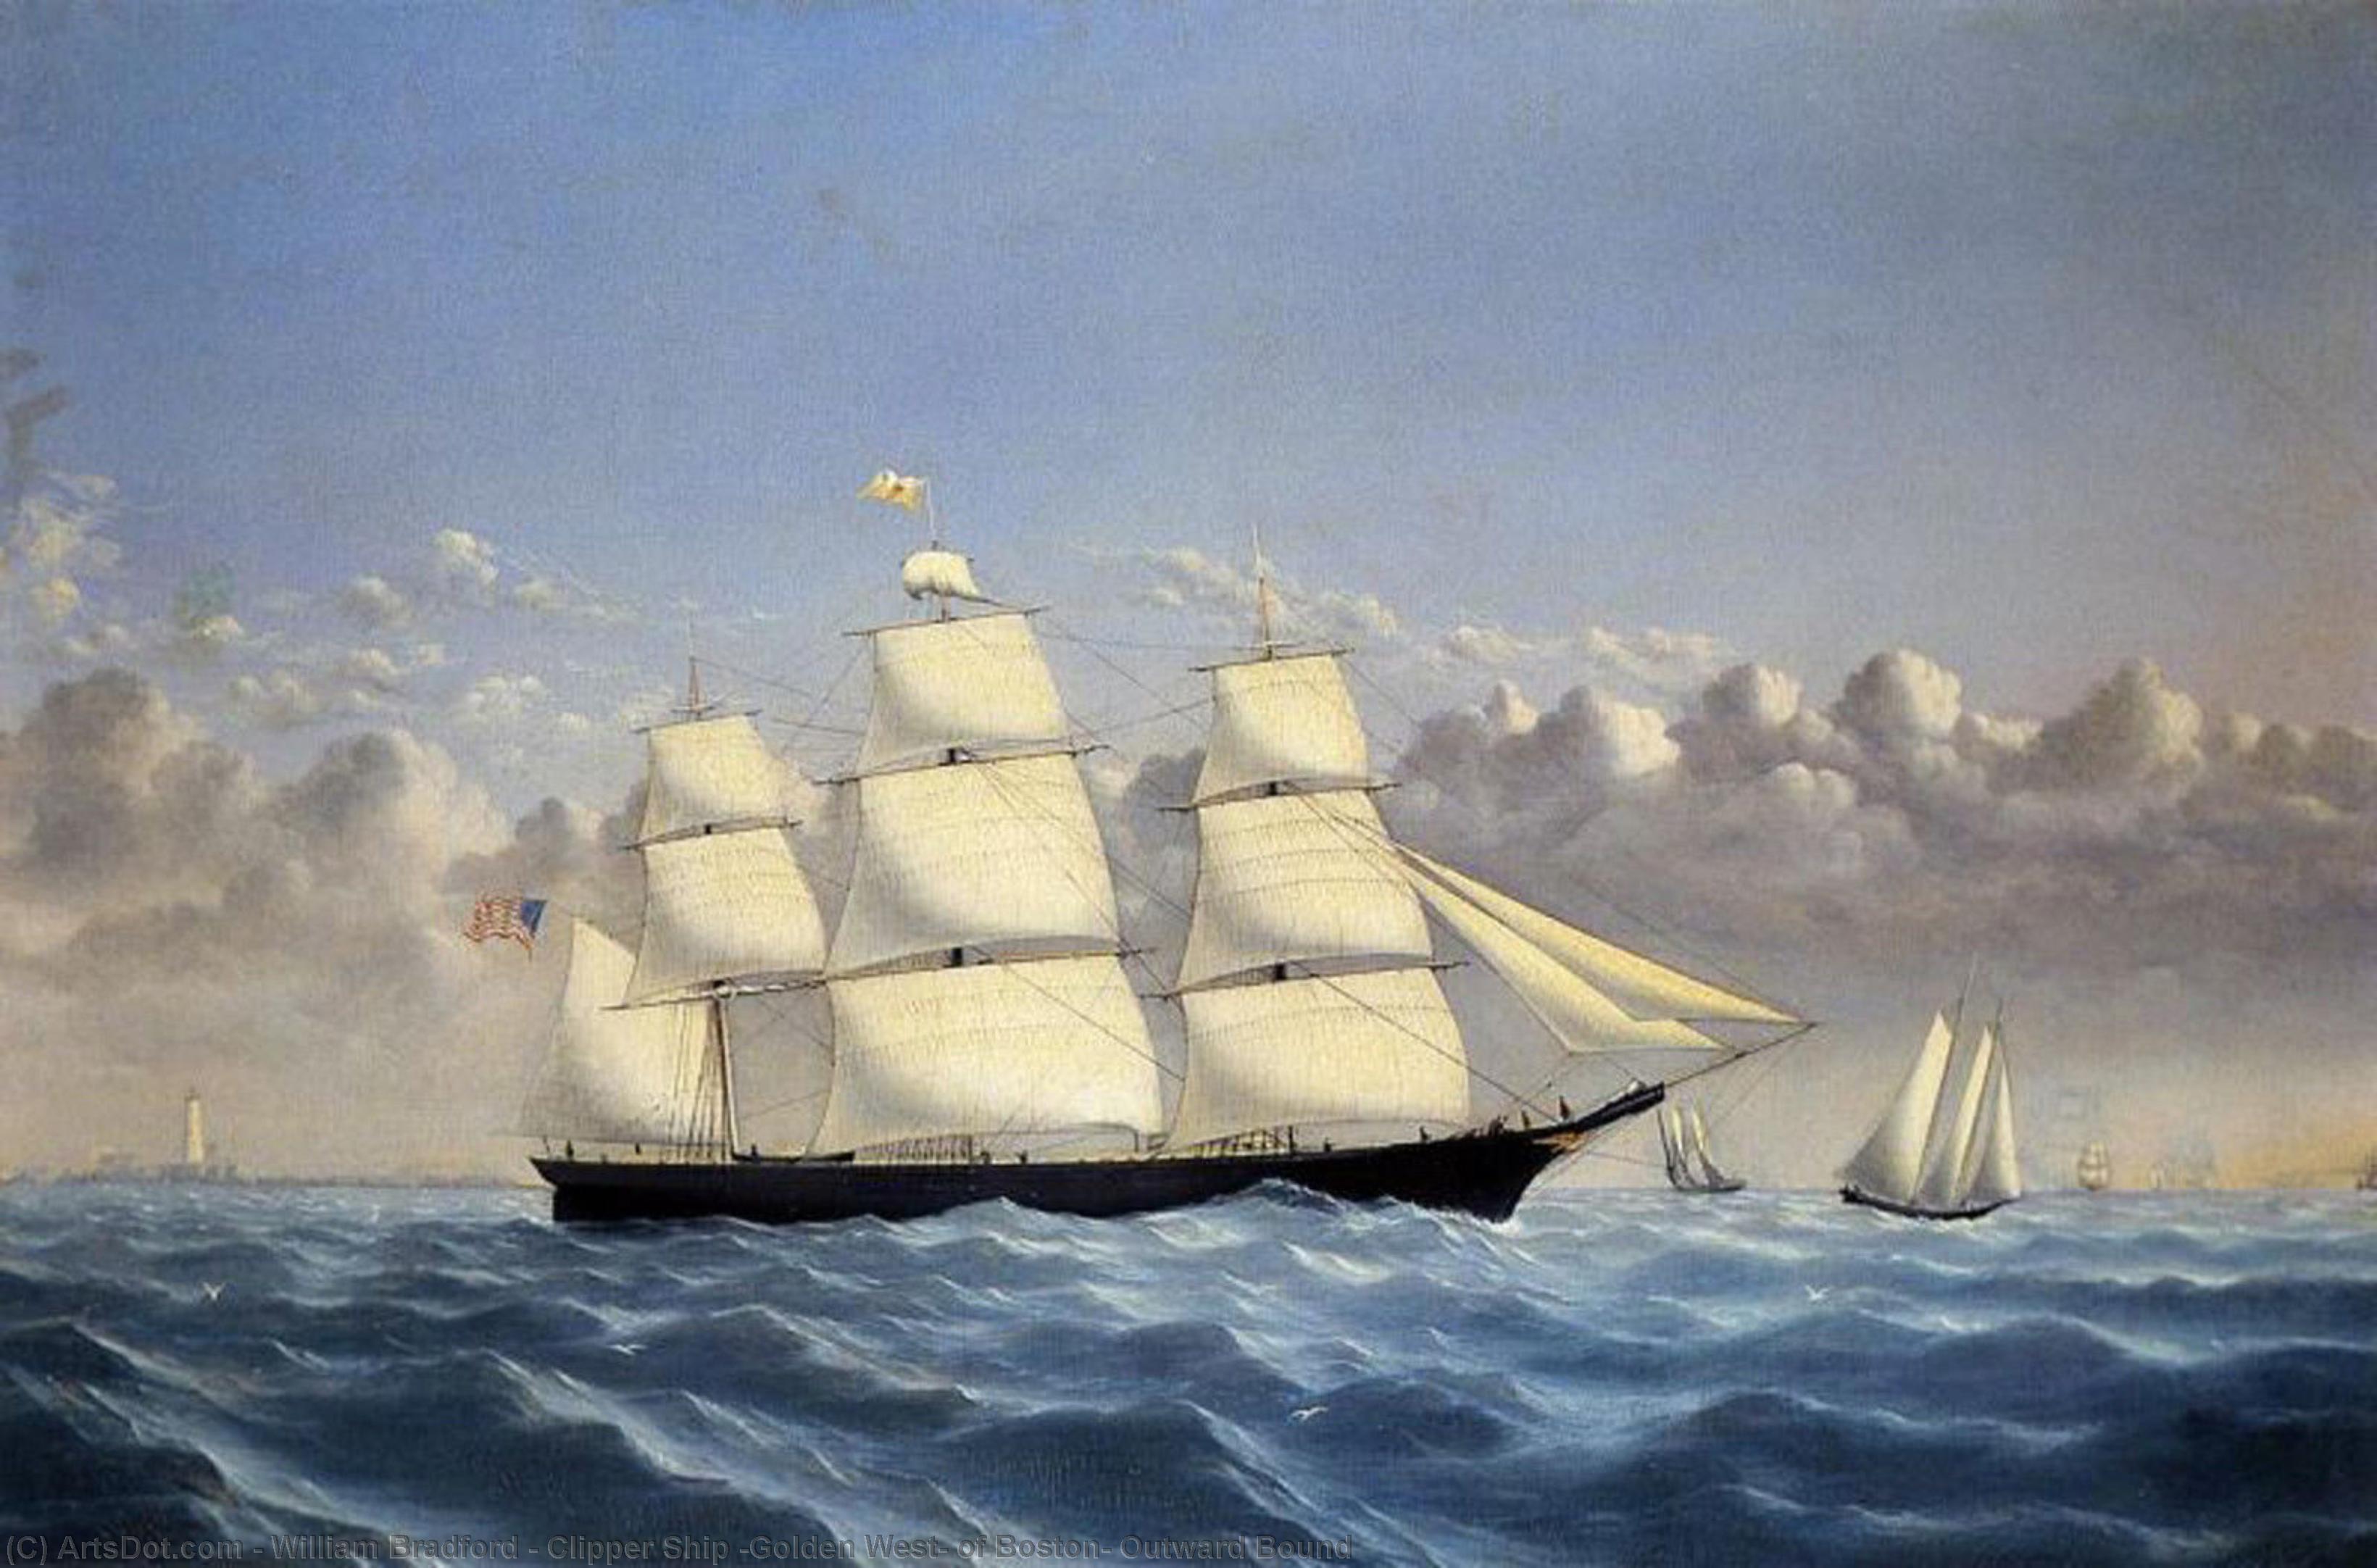 Wikoo.org - موسوعة الفنون الجميلة - اللوحة، العمل الفني William Bradford - Clipper Ship 'Golden West' of Boston, Outward Bound